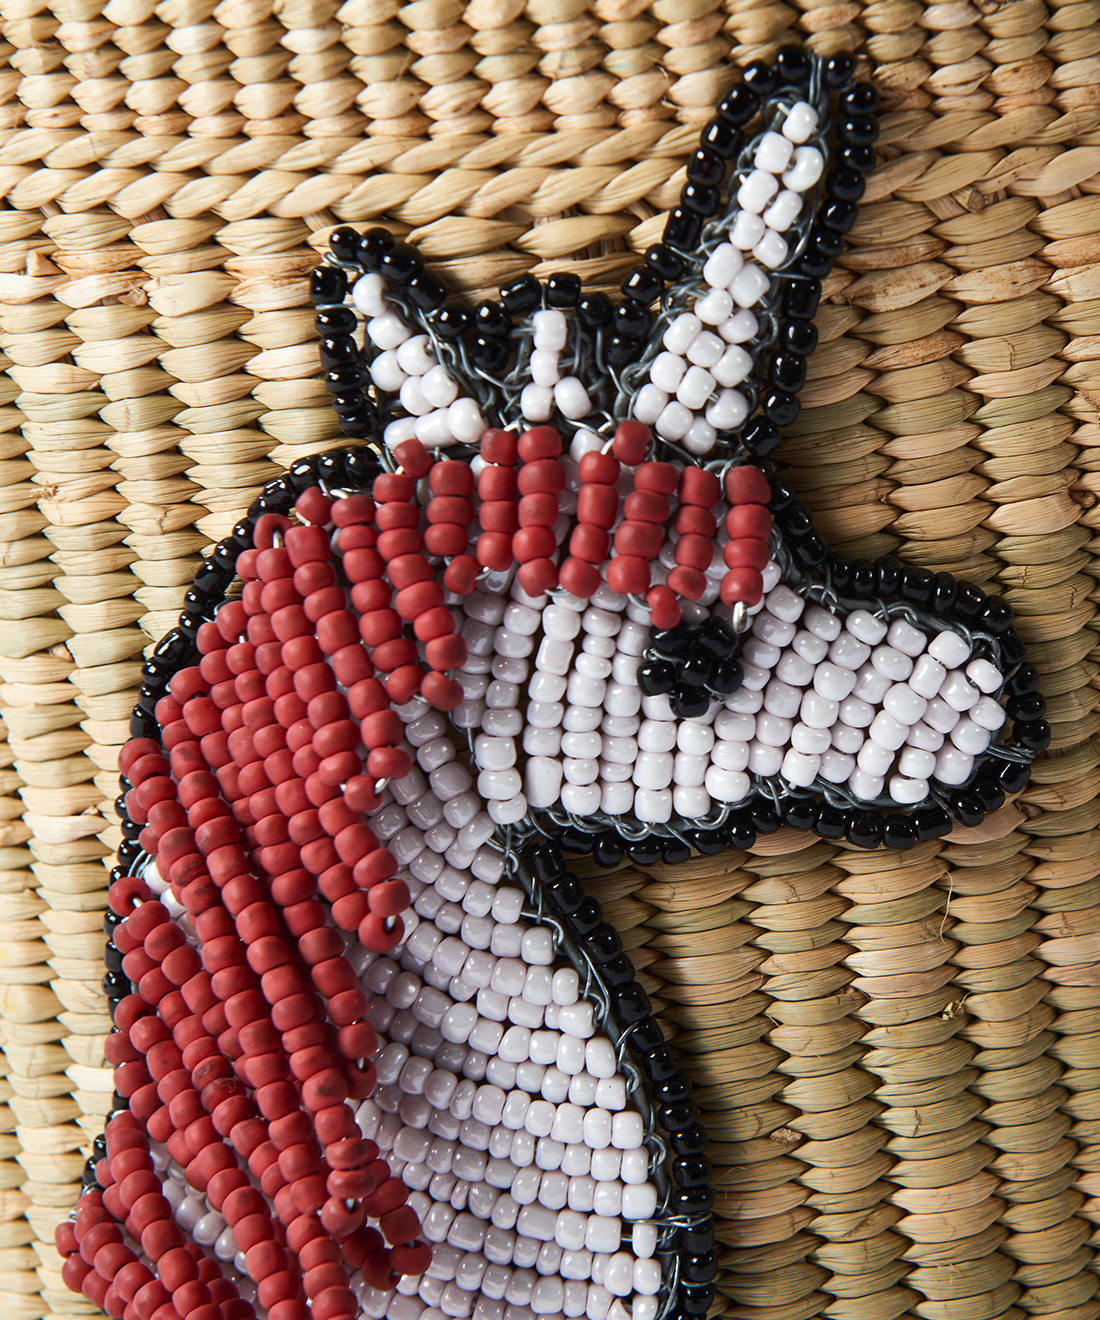 Unicorn Aringa Tanzanian Weave basket